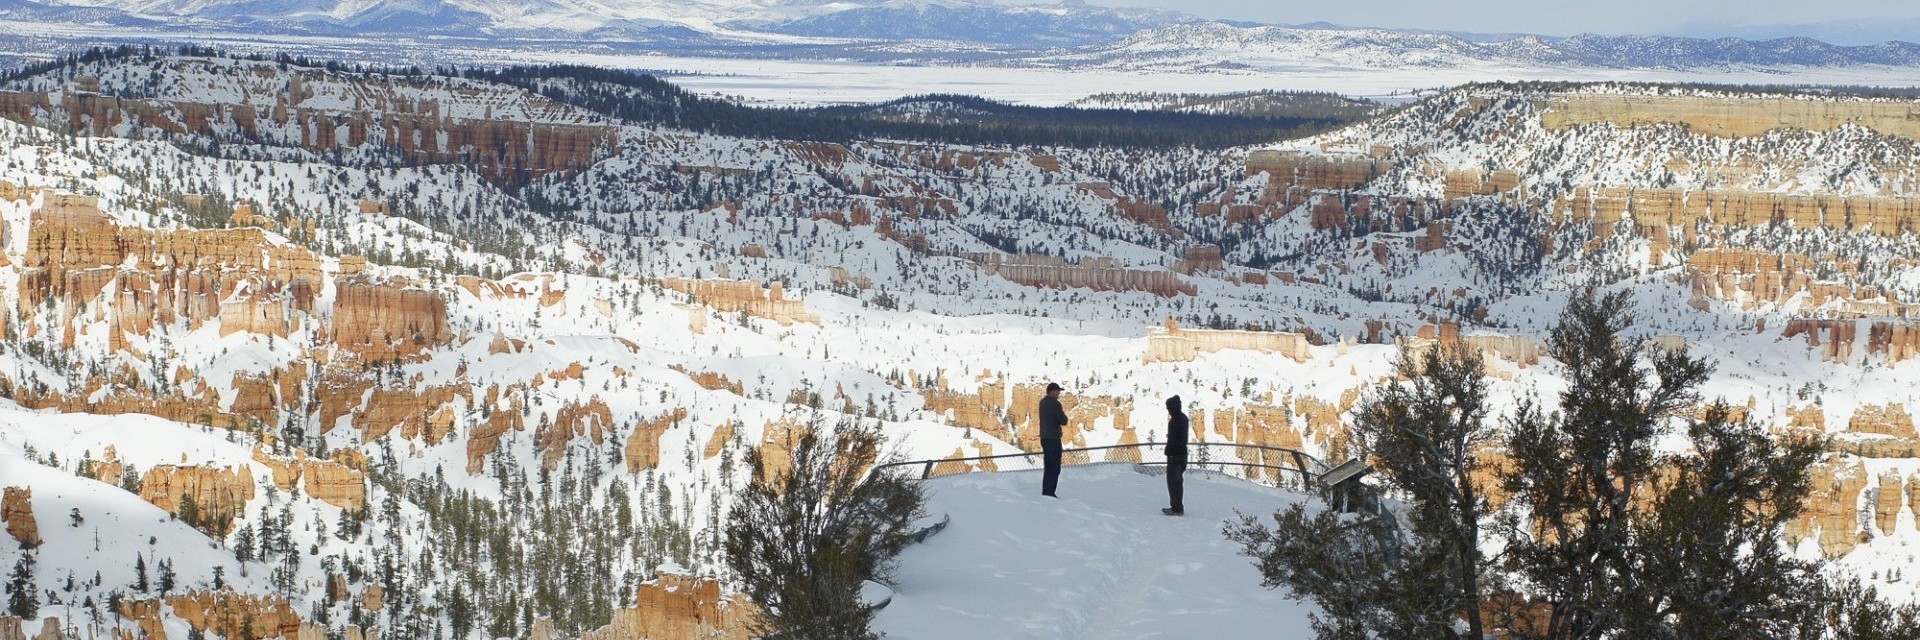 Bryce Canyon inverno